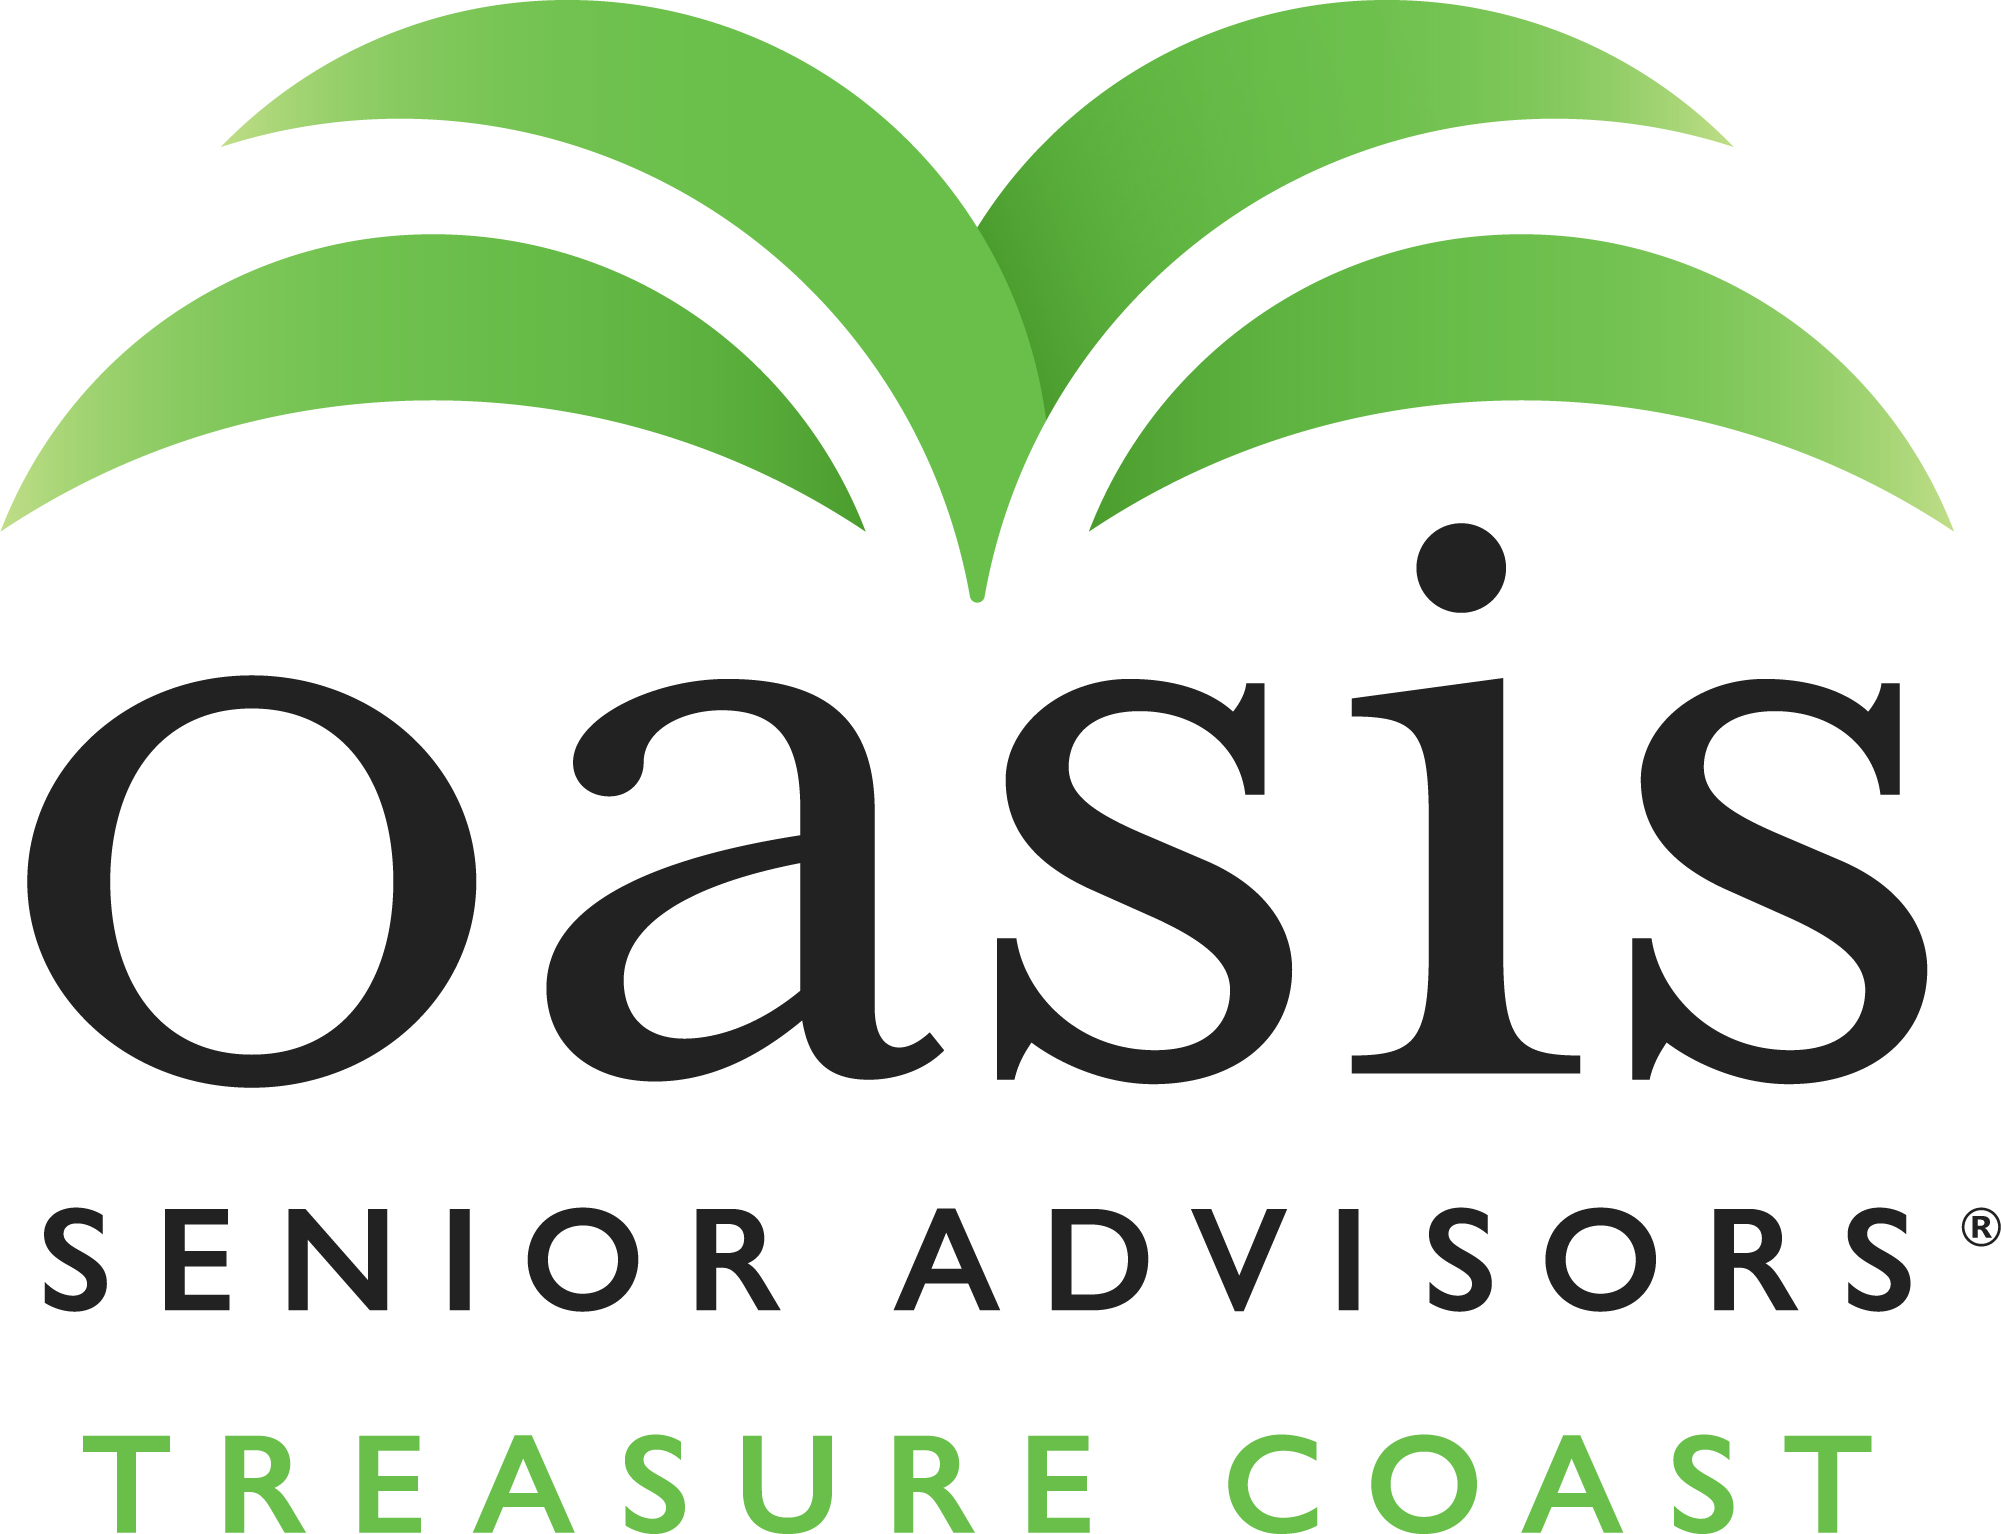 B3 Oasis Senior Advisors (Estación de Hidratación)